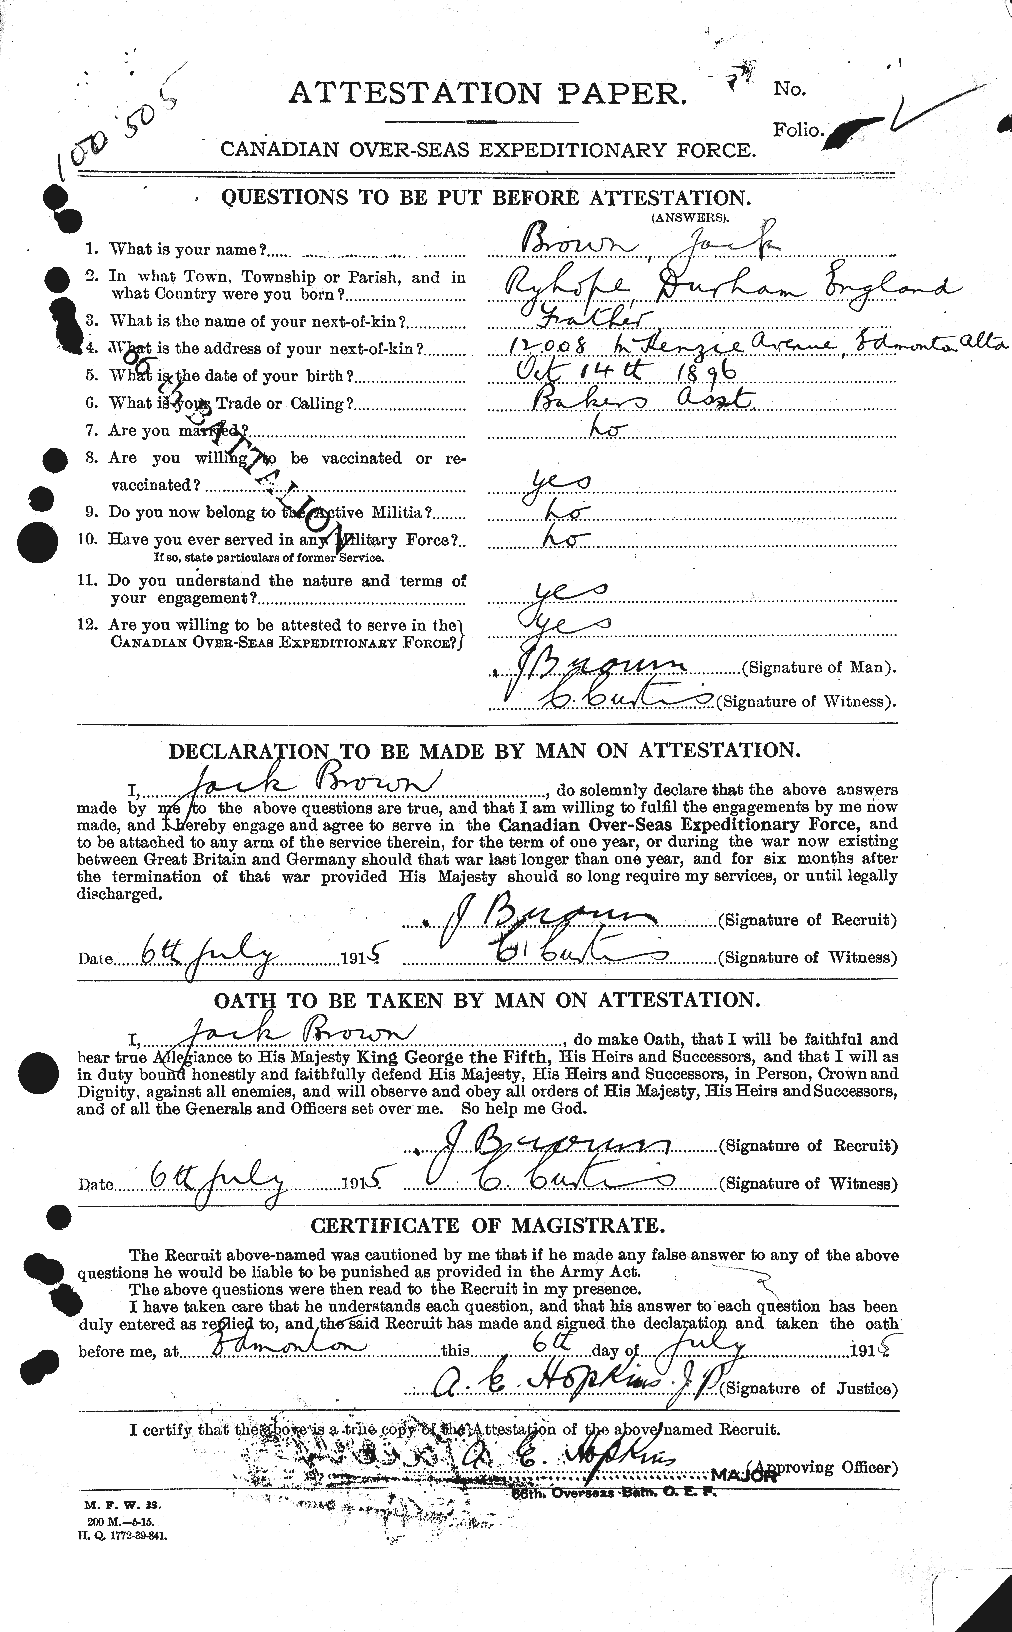 Dossiers du Personnel de la Première Guerre mondiale - CEC 265681a